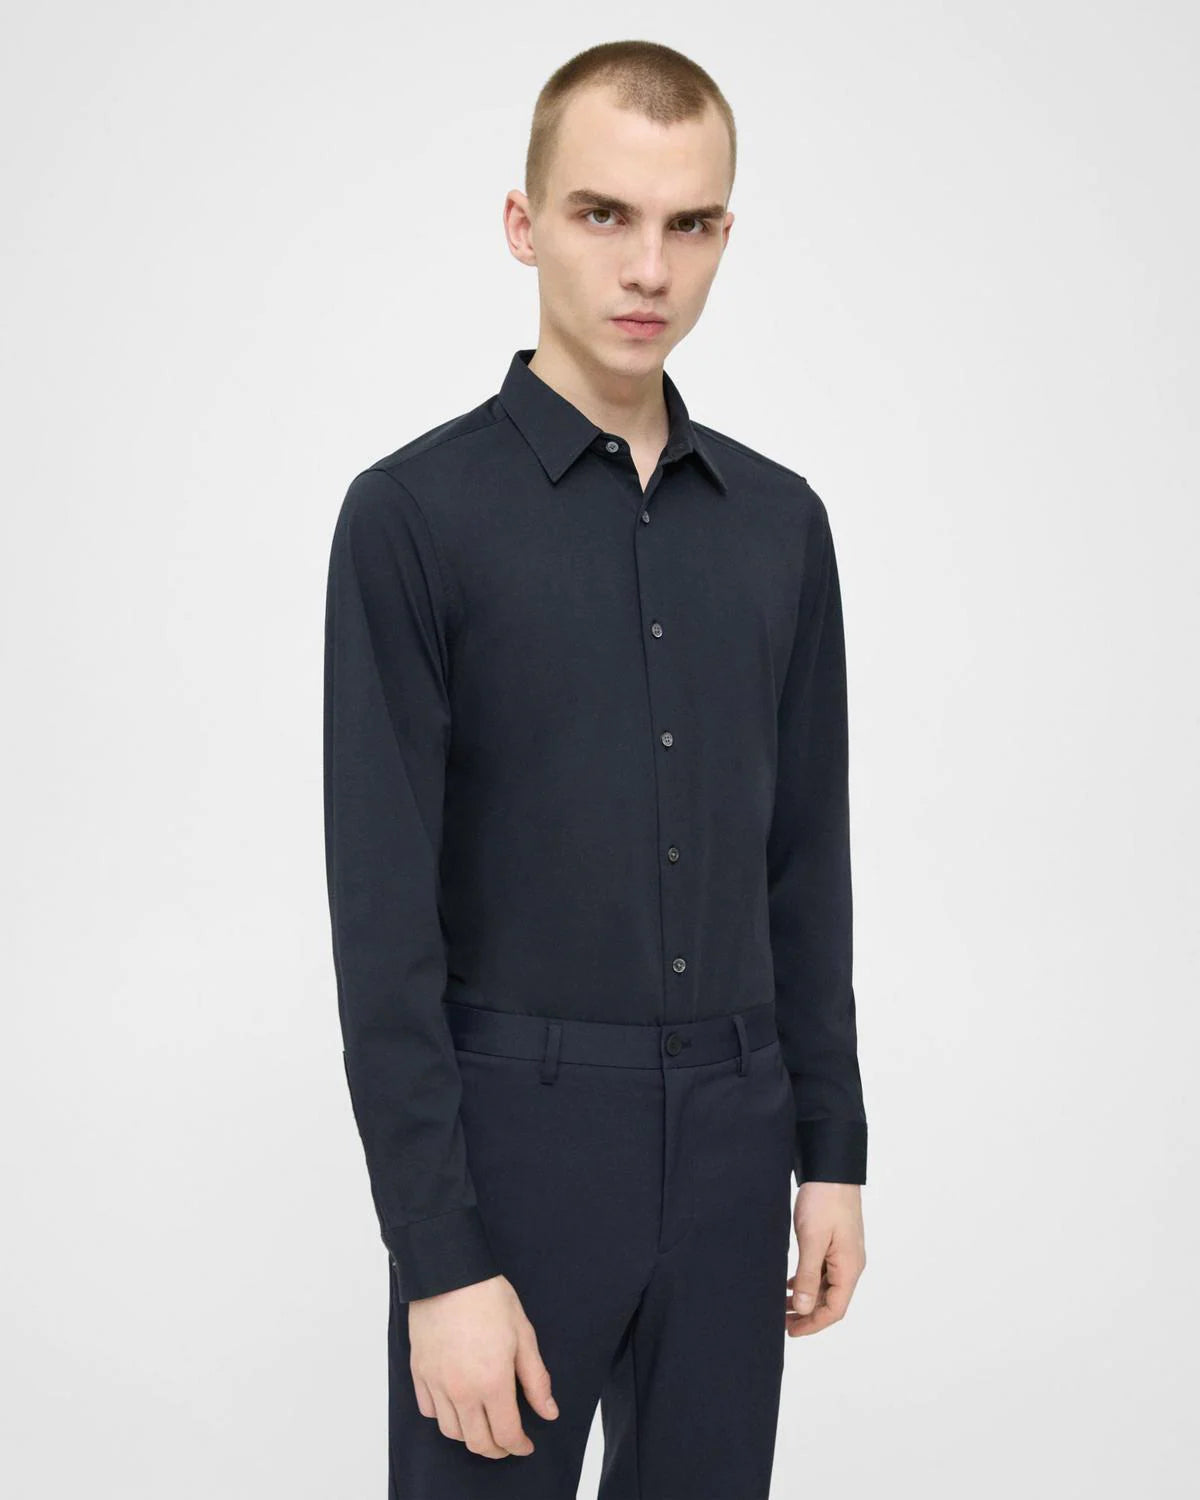 Louis Vuitton Side Accent Tailored Pants BLACK. Size 38